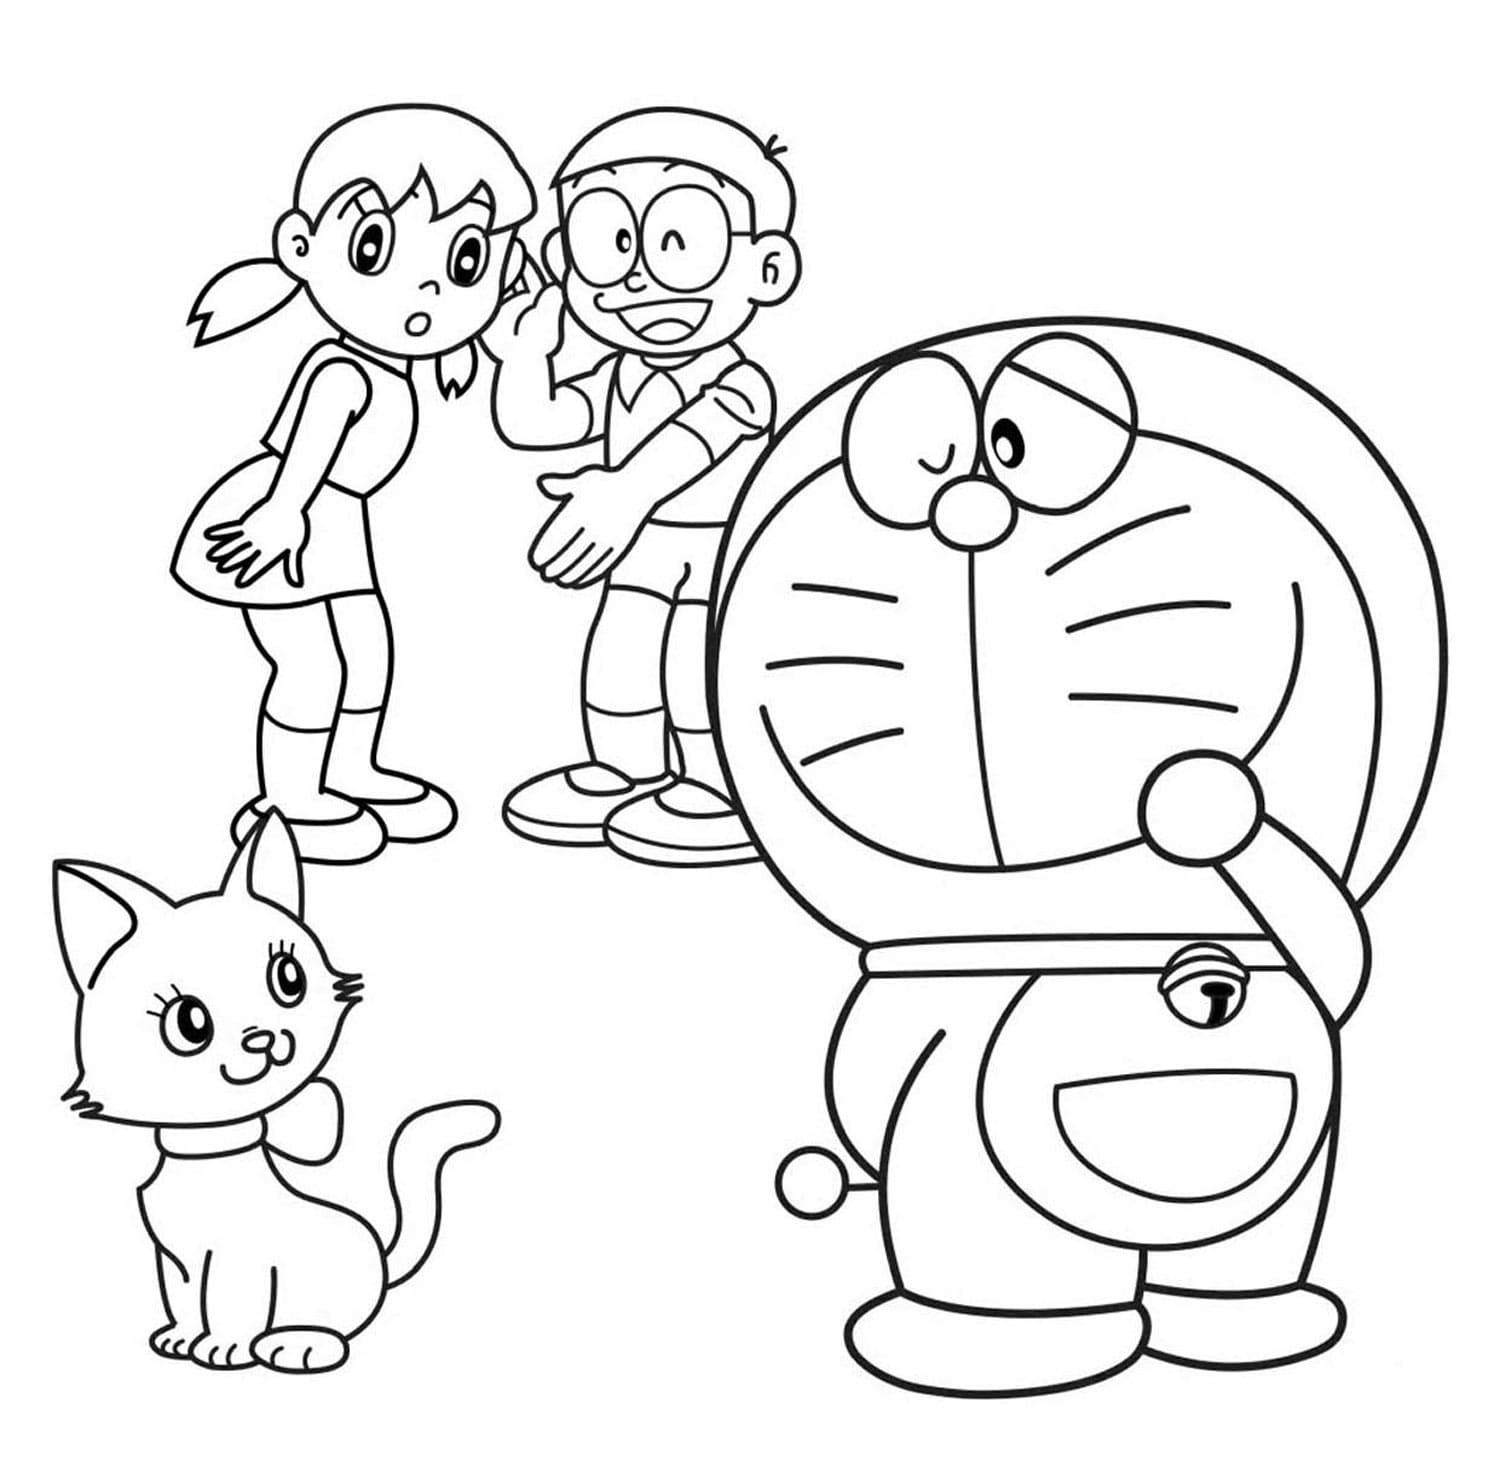 Trang tô màu Doraemon sẽ giúp bạn tái hiện các nhân vật trong bộ truyện tranh kinh điển này một cách sinh động và đầy màu sắc. Cùng thưởng thức những phút giây thư giản bình yên với bộ trang tô màu Doraemon hấp dẫn này nhé.